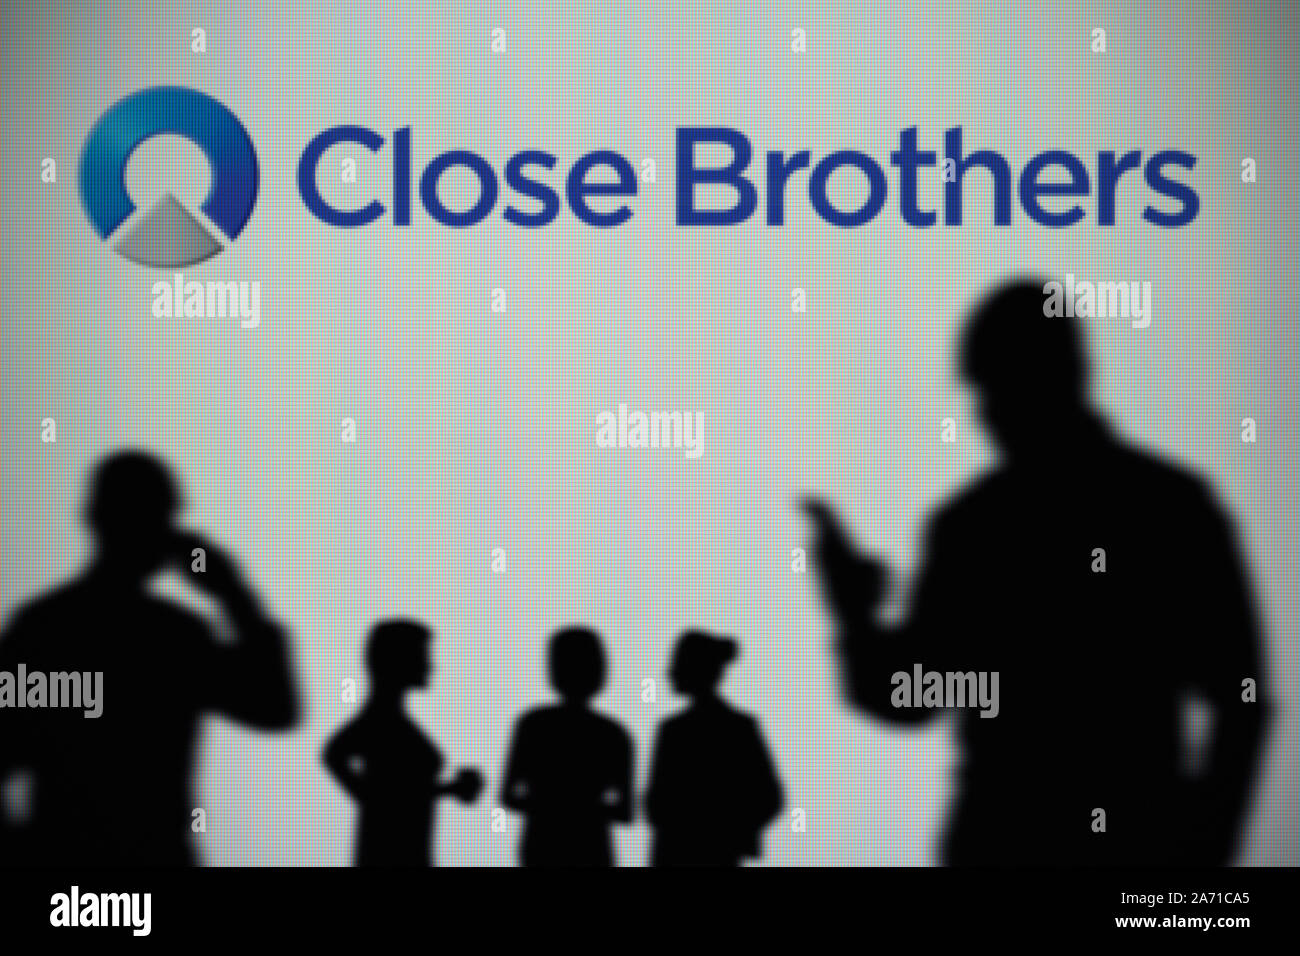 El logotipo del Grupo Close Brothers es visto en una pantalla LED en el fondo mientras una silueta persona utiliza un smartphone (uso Editorial solamente) Foto de stock